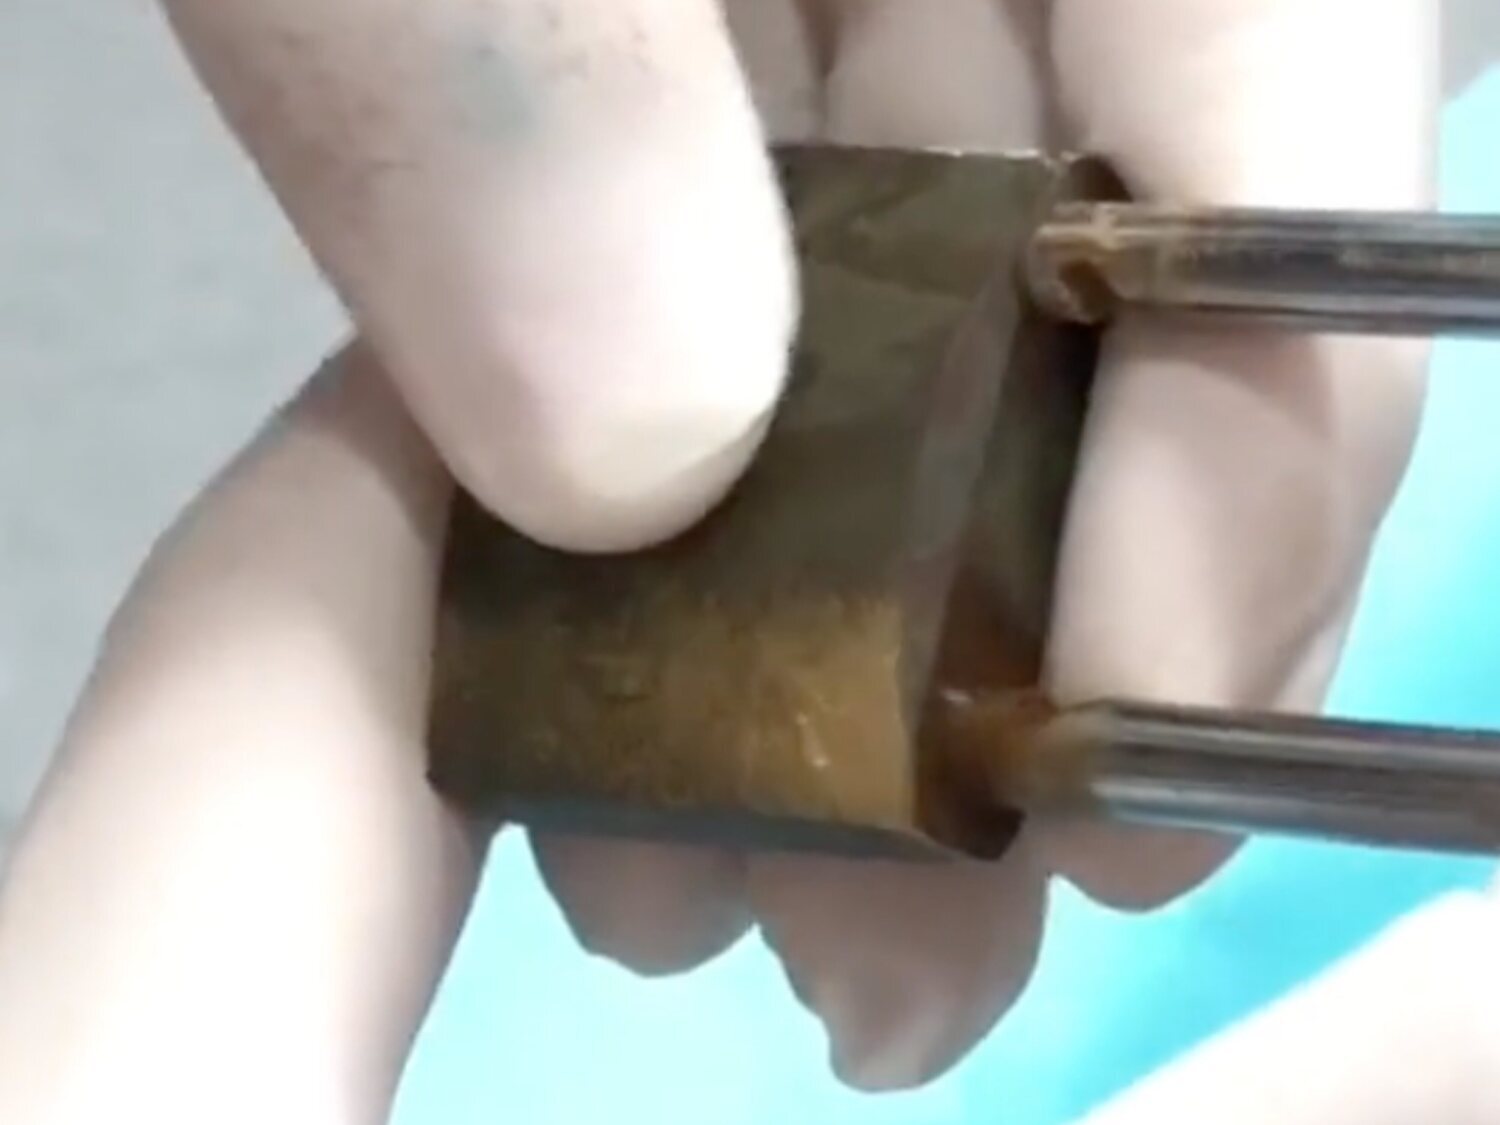 Un joven permanece con un candado incrustado en el pene durante meses porque su novia tenía las llaves